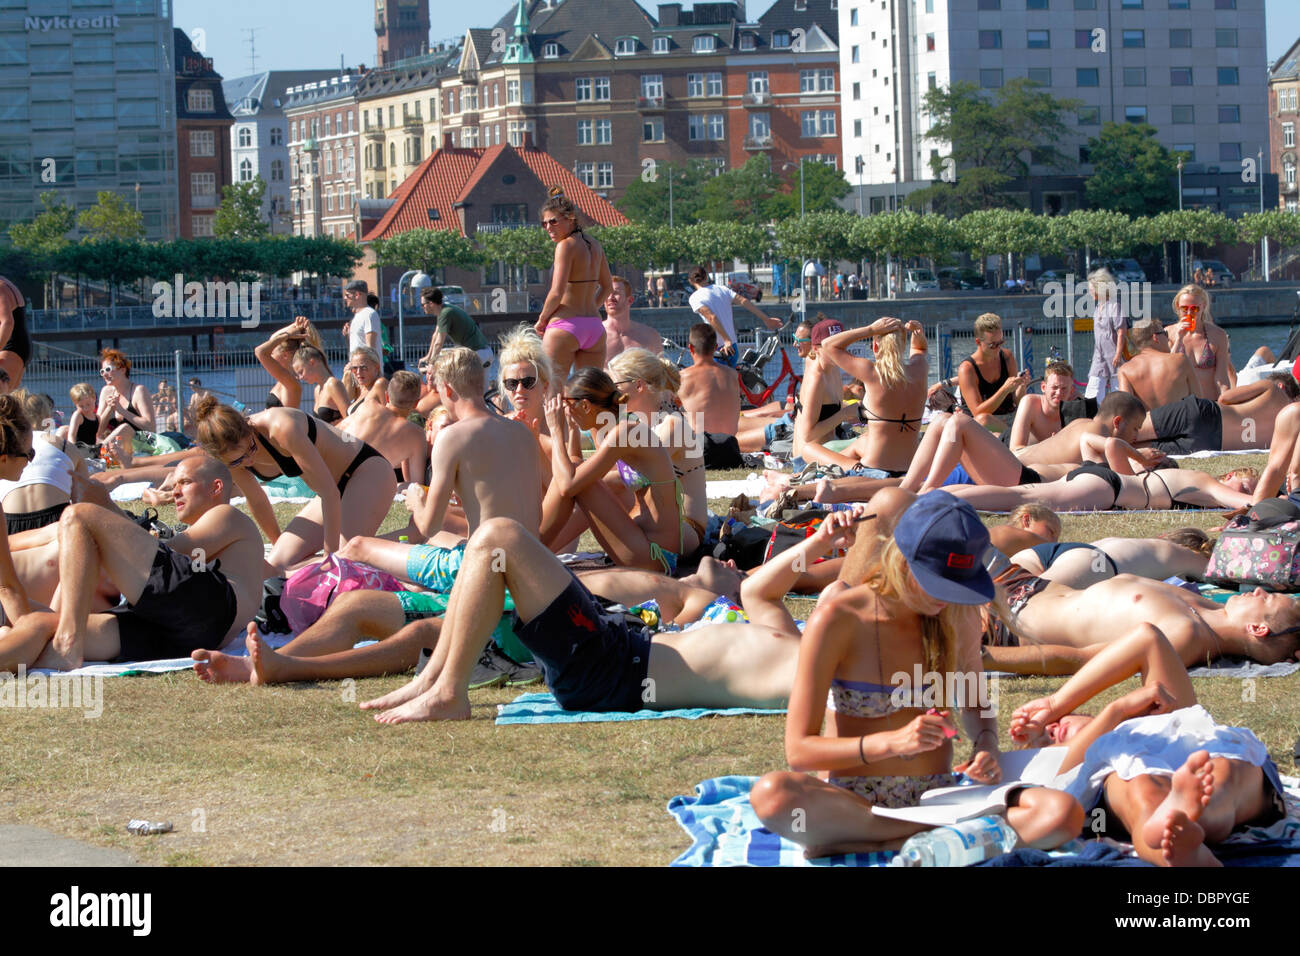 Das Hafenbad der Inseln Bryggge in Kopenhagen war voller Sonnenbäder, die junge Leute beim Erhitzen erfrischen. Städtischer Strand. Havnebad, Hyge. Stockfoto